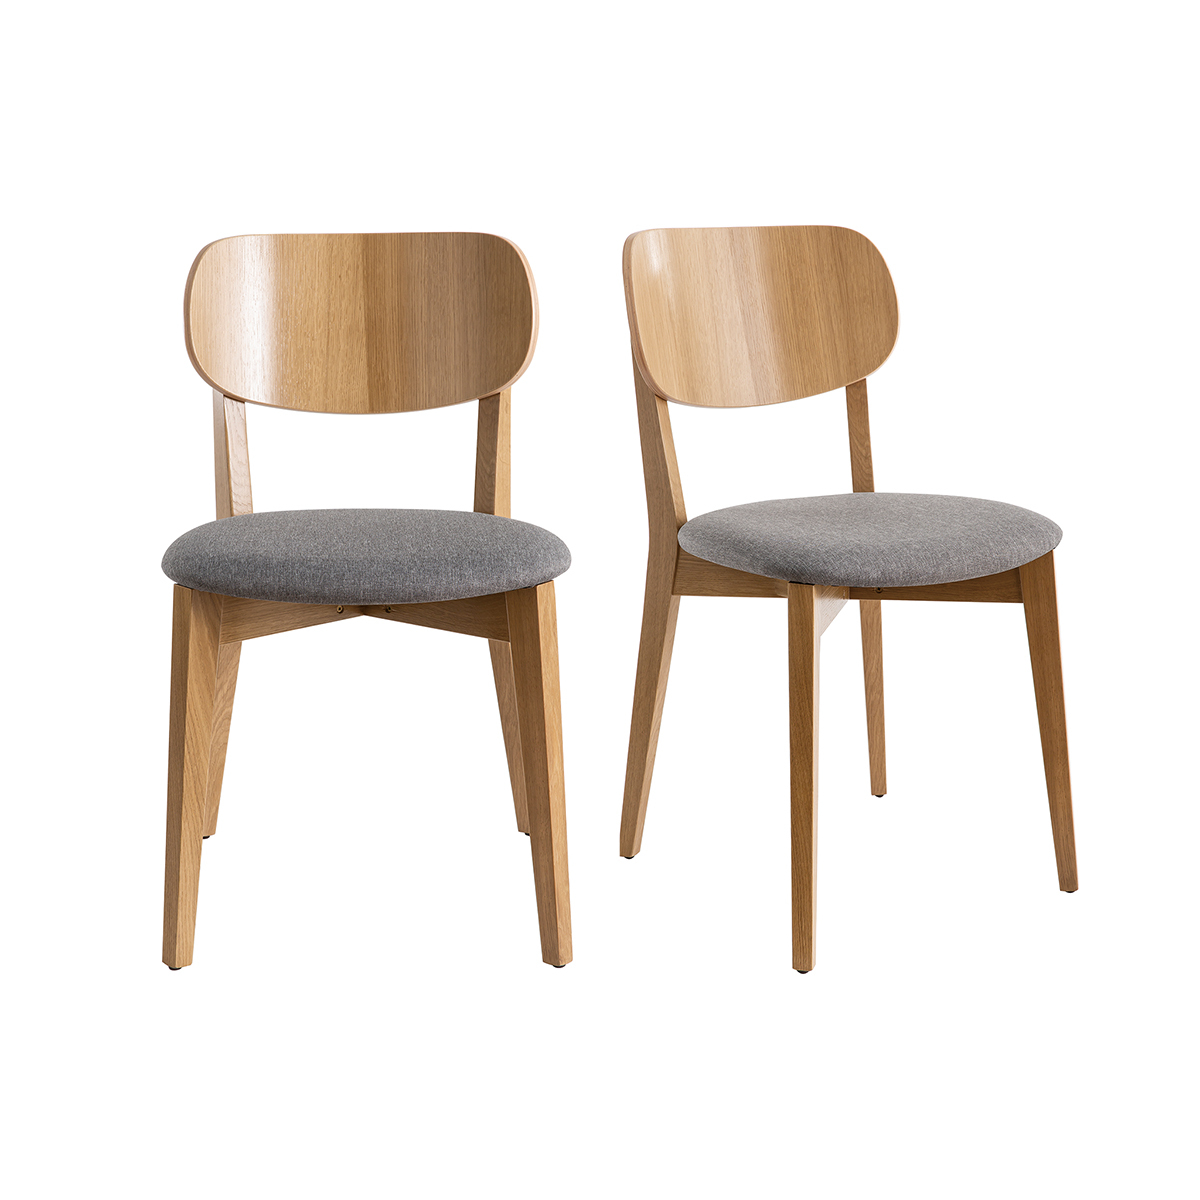 Chaises vintage en bois chêne clair et assise en tissu gris clair (lot de 2) LUCIA vue1